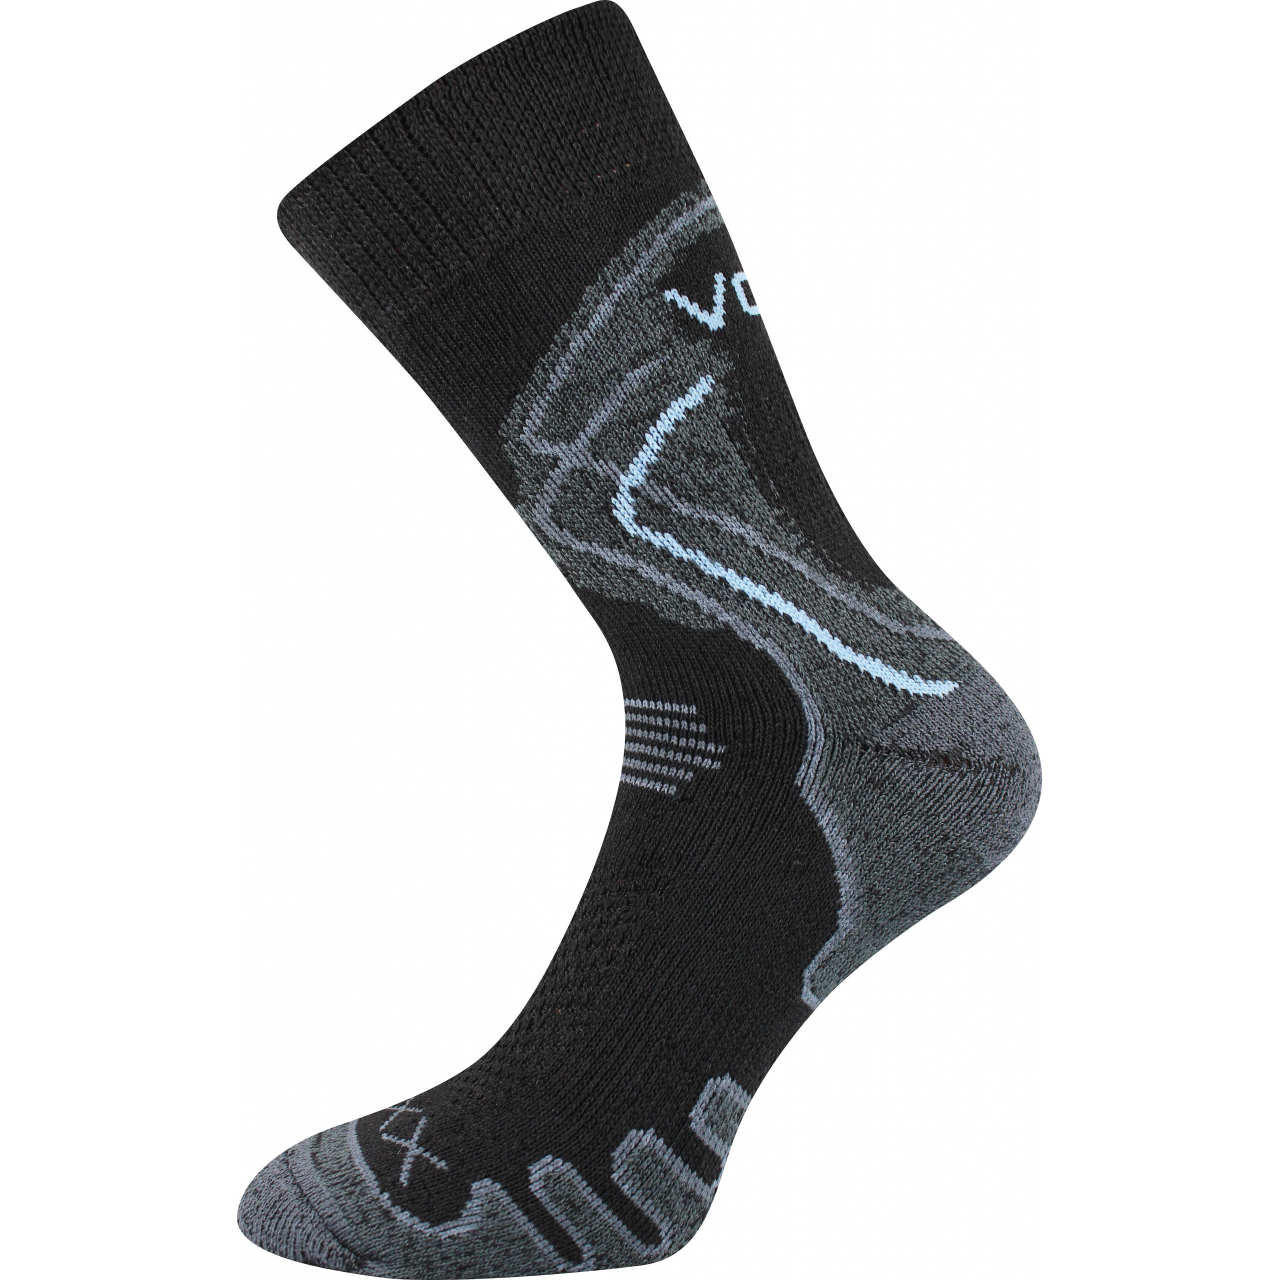 Ponožky trekingové unisex Voxx Limit III - černé, 35-38